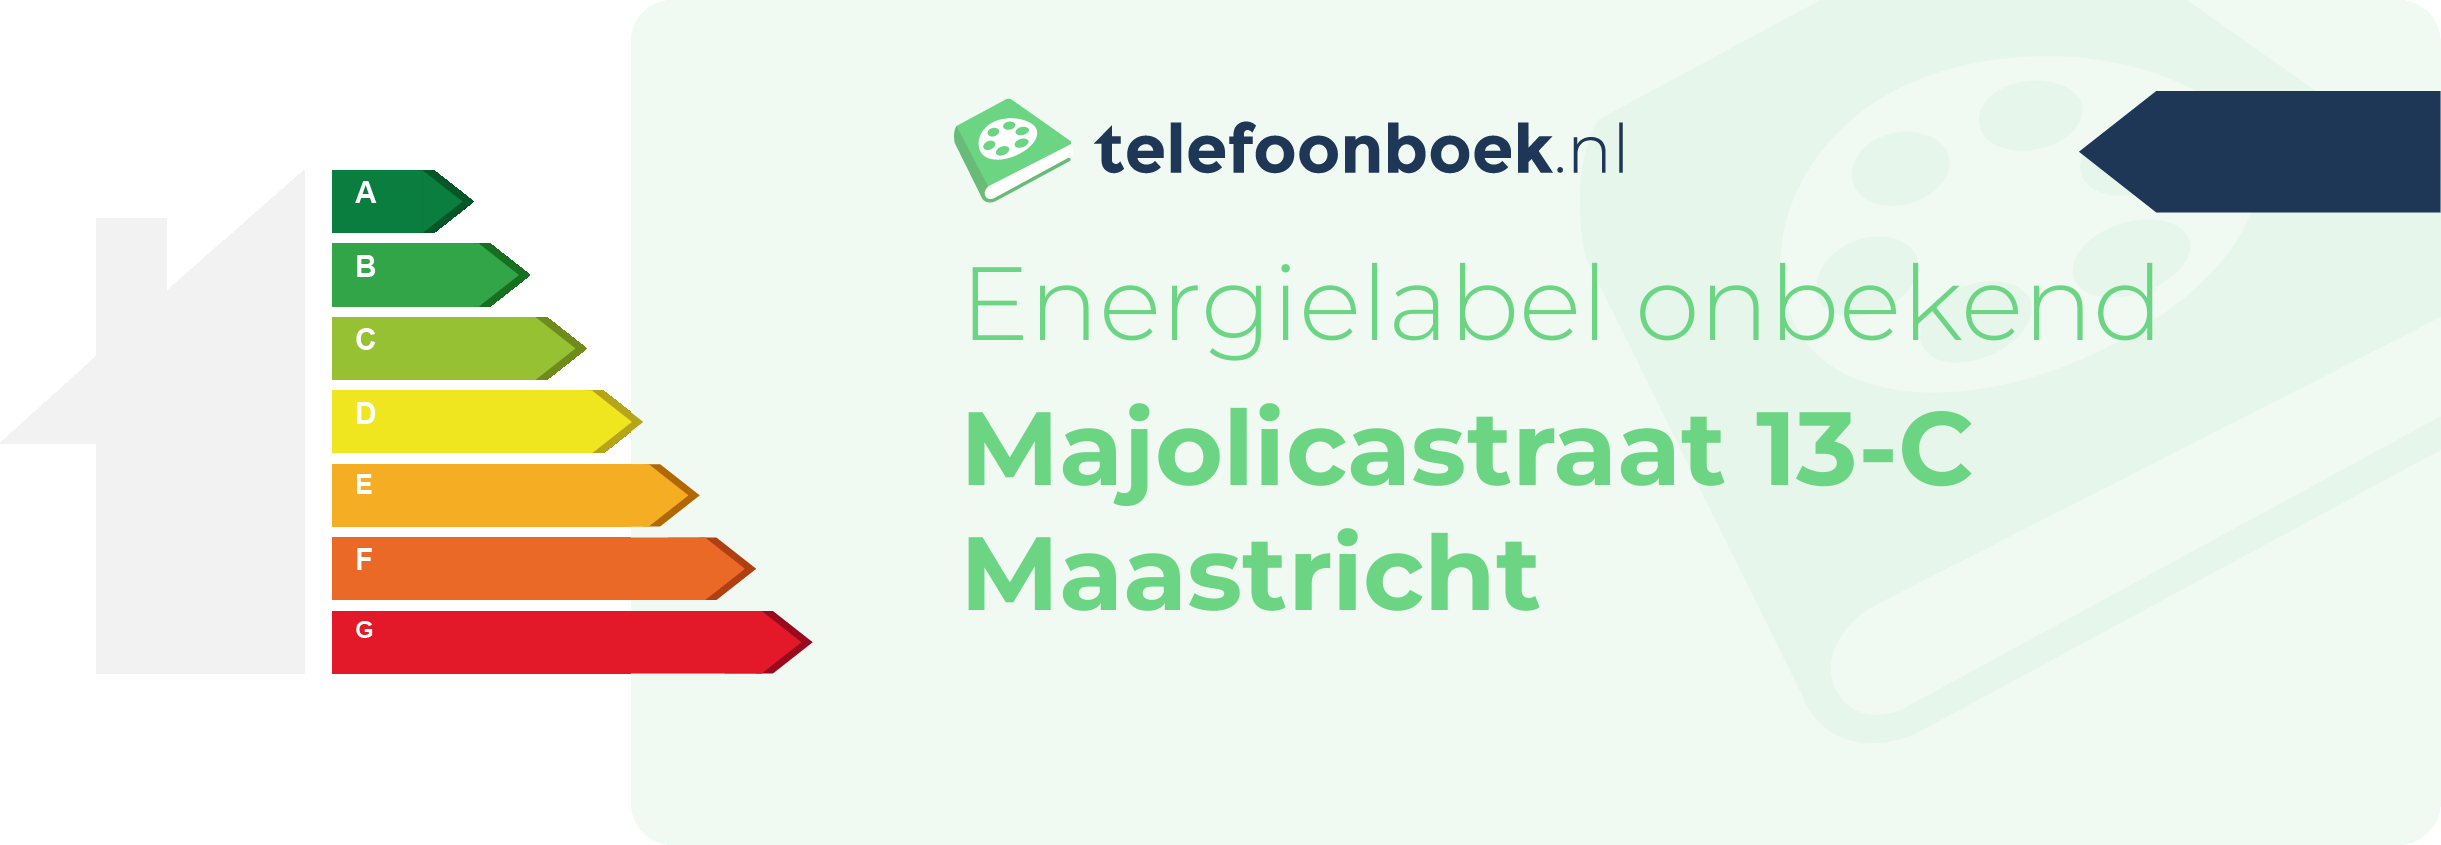 Energielabel Majolicastraat 13-C Maastricht